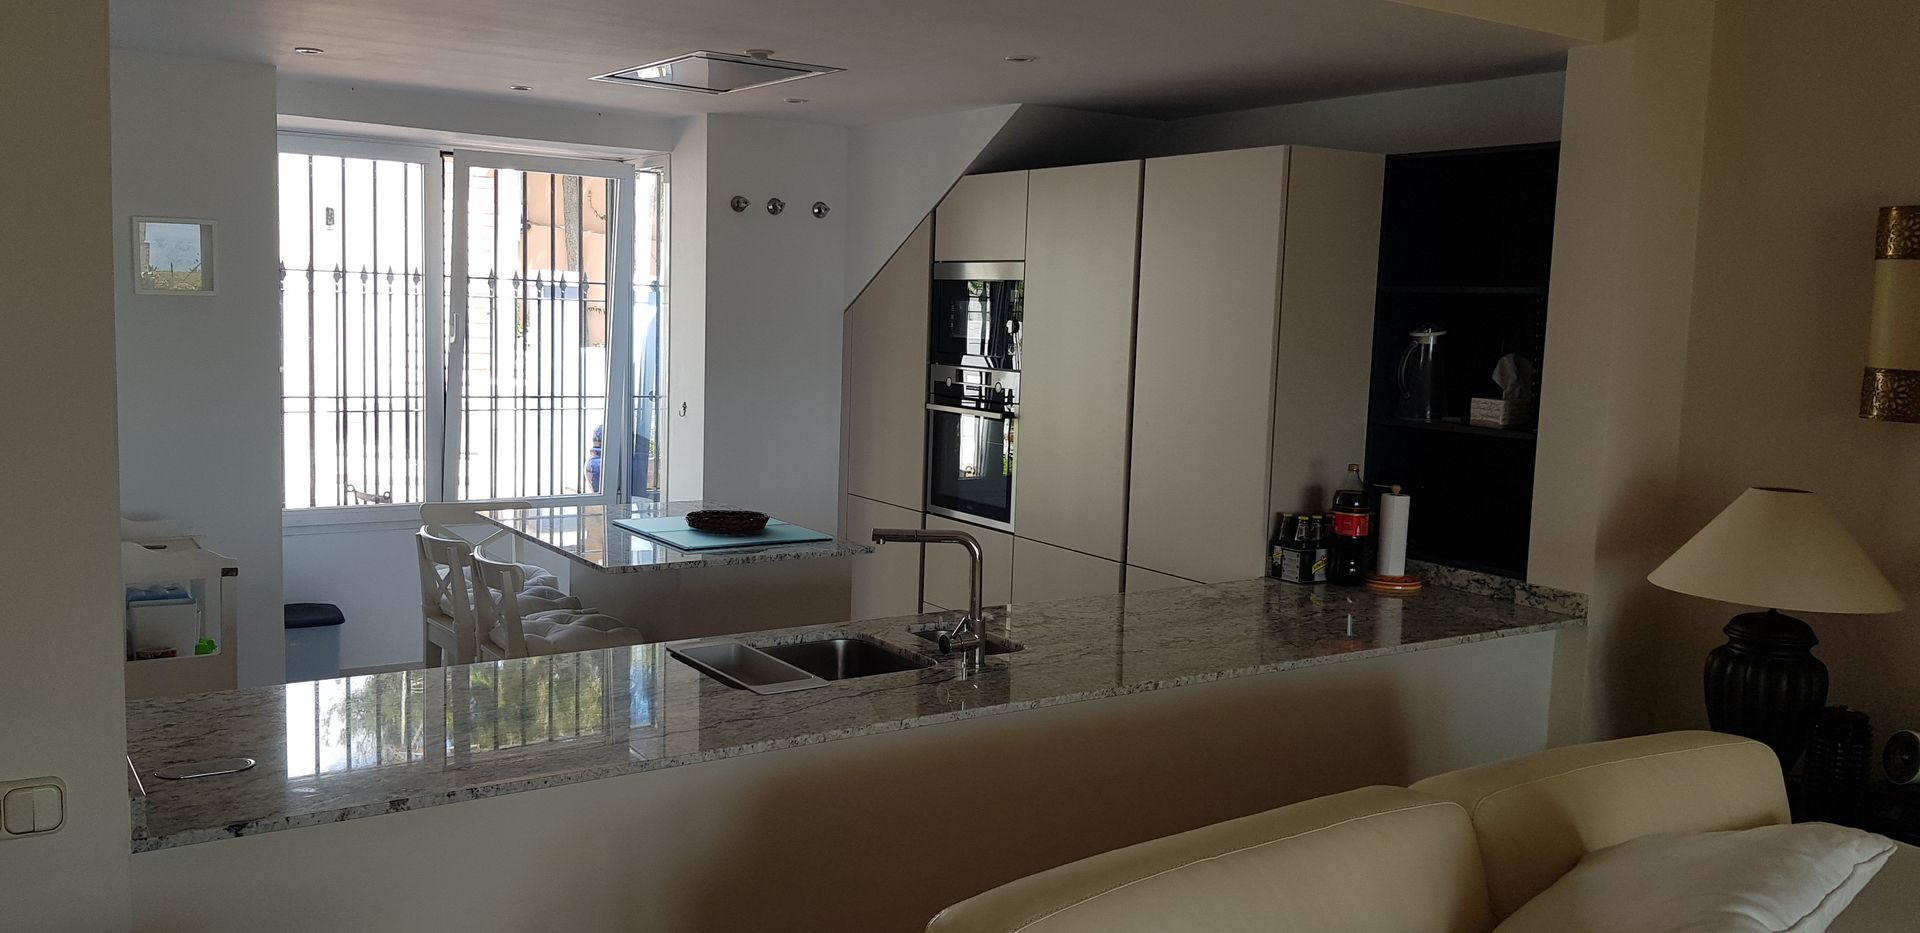 Cocina abierta al salon con encimera de granito Naturamia Decodan - Estudio de cocinas y armarios en Estepona y Marbella Cocinas integrales